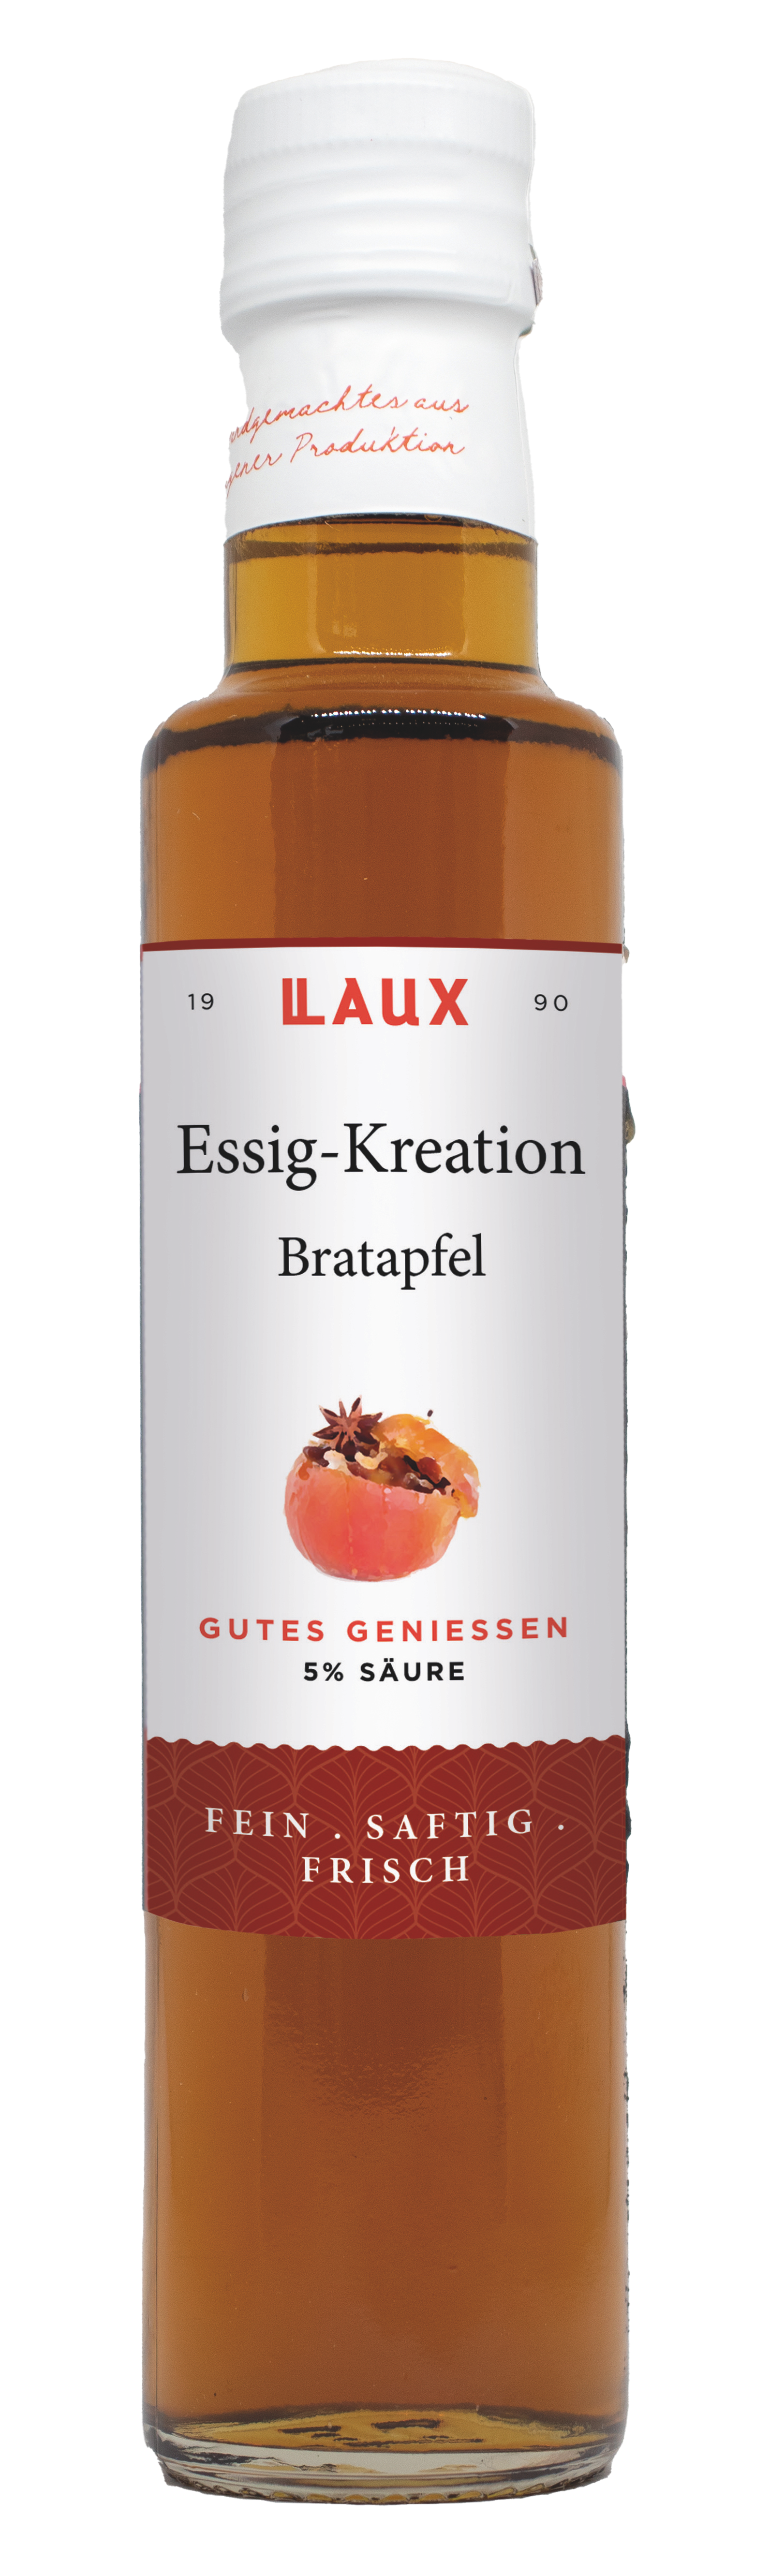 Essig Kreation Bratapfel 5% Säure - 250 ml Flasche